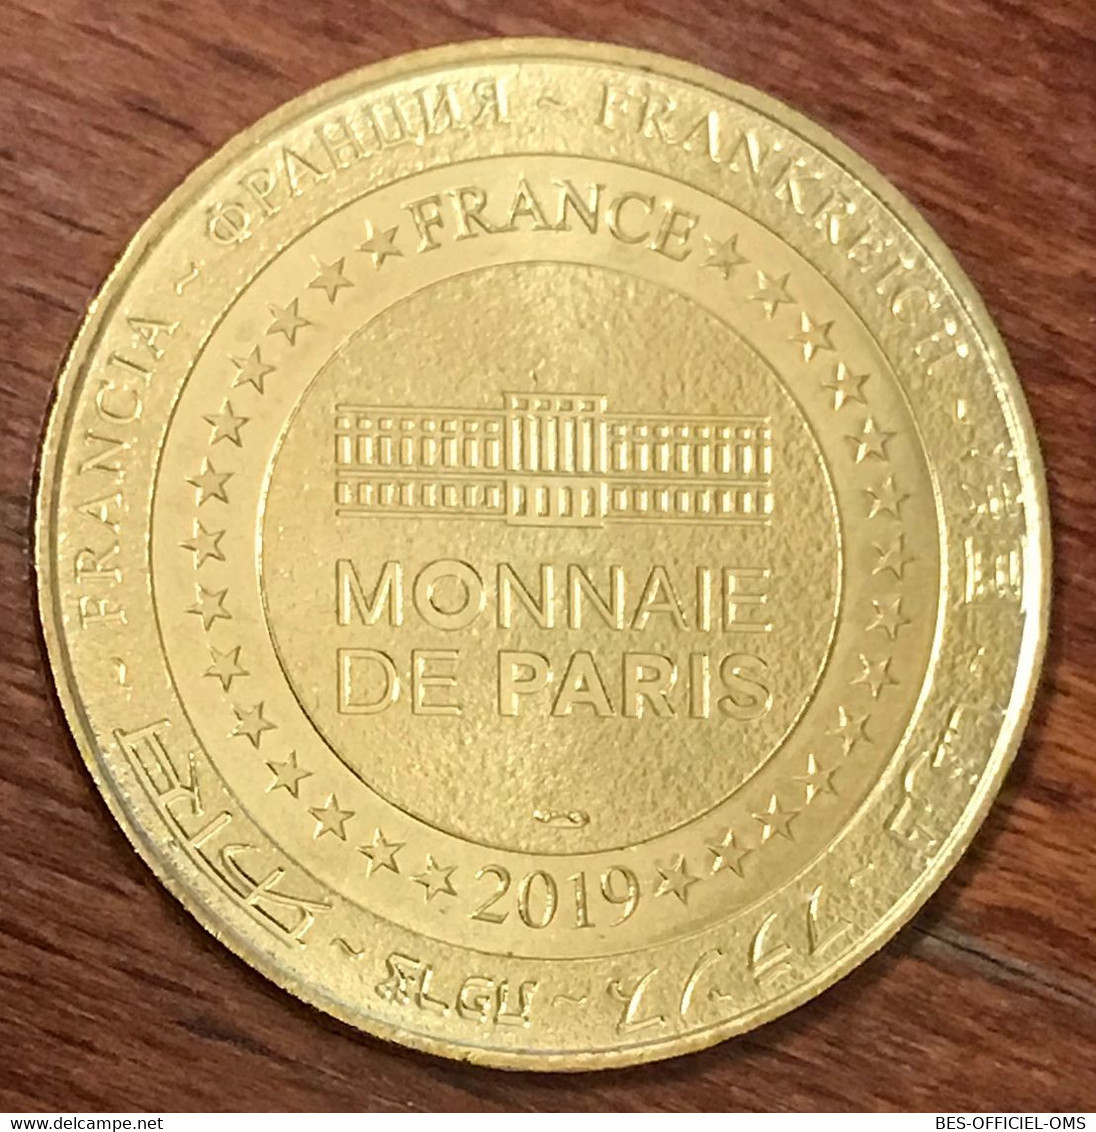 37 CHÂTEAU DE CHENONCEAU XVIe SIÈCLE MDP 2019 MEDAILLE SOUVENIR MONNAIE DE PARIS JETON TOURISTIQUE MEDALS COINS TOKENS - 2019